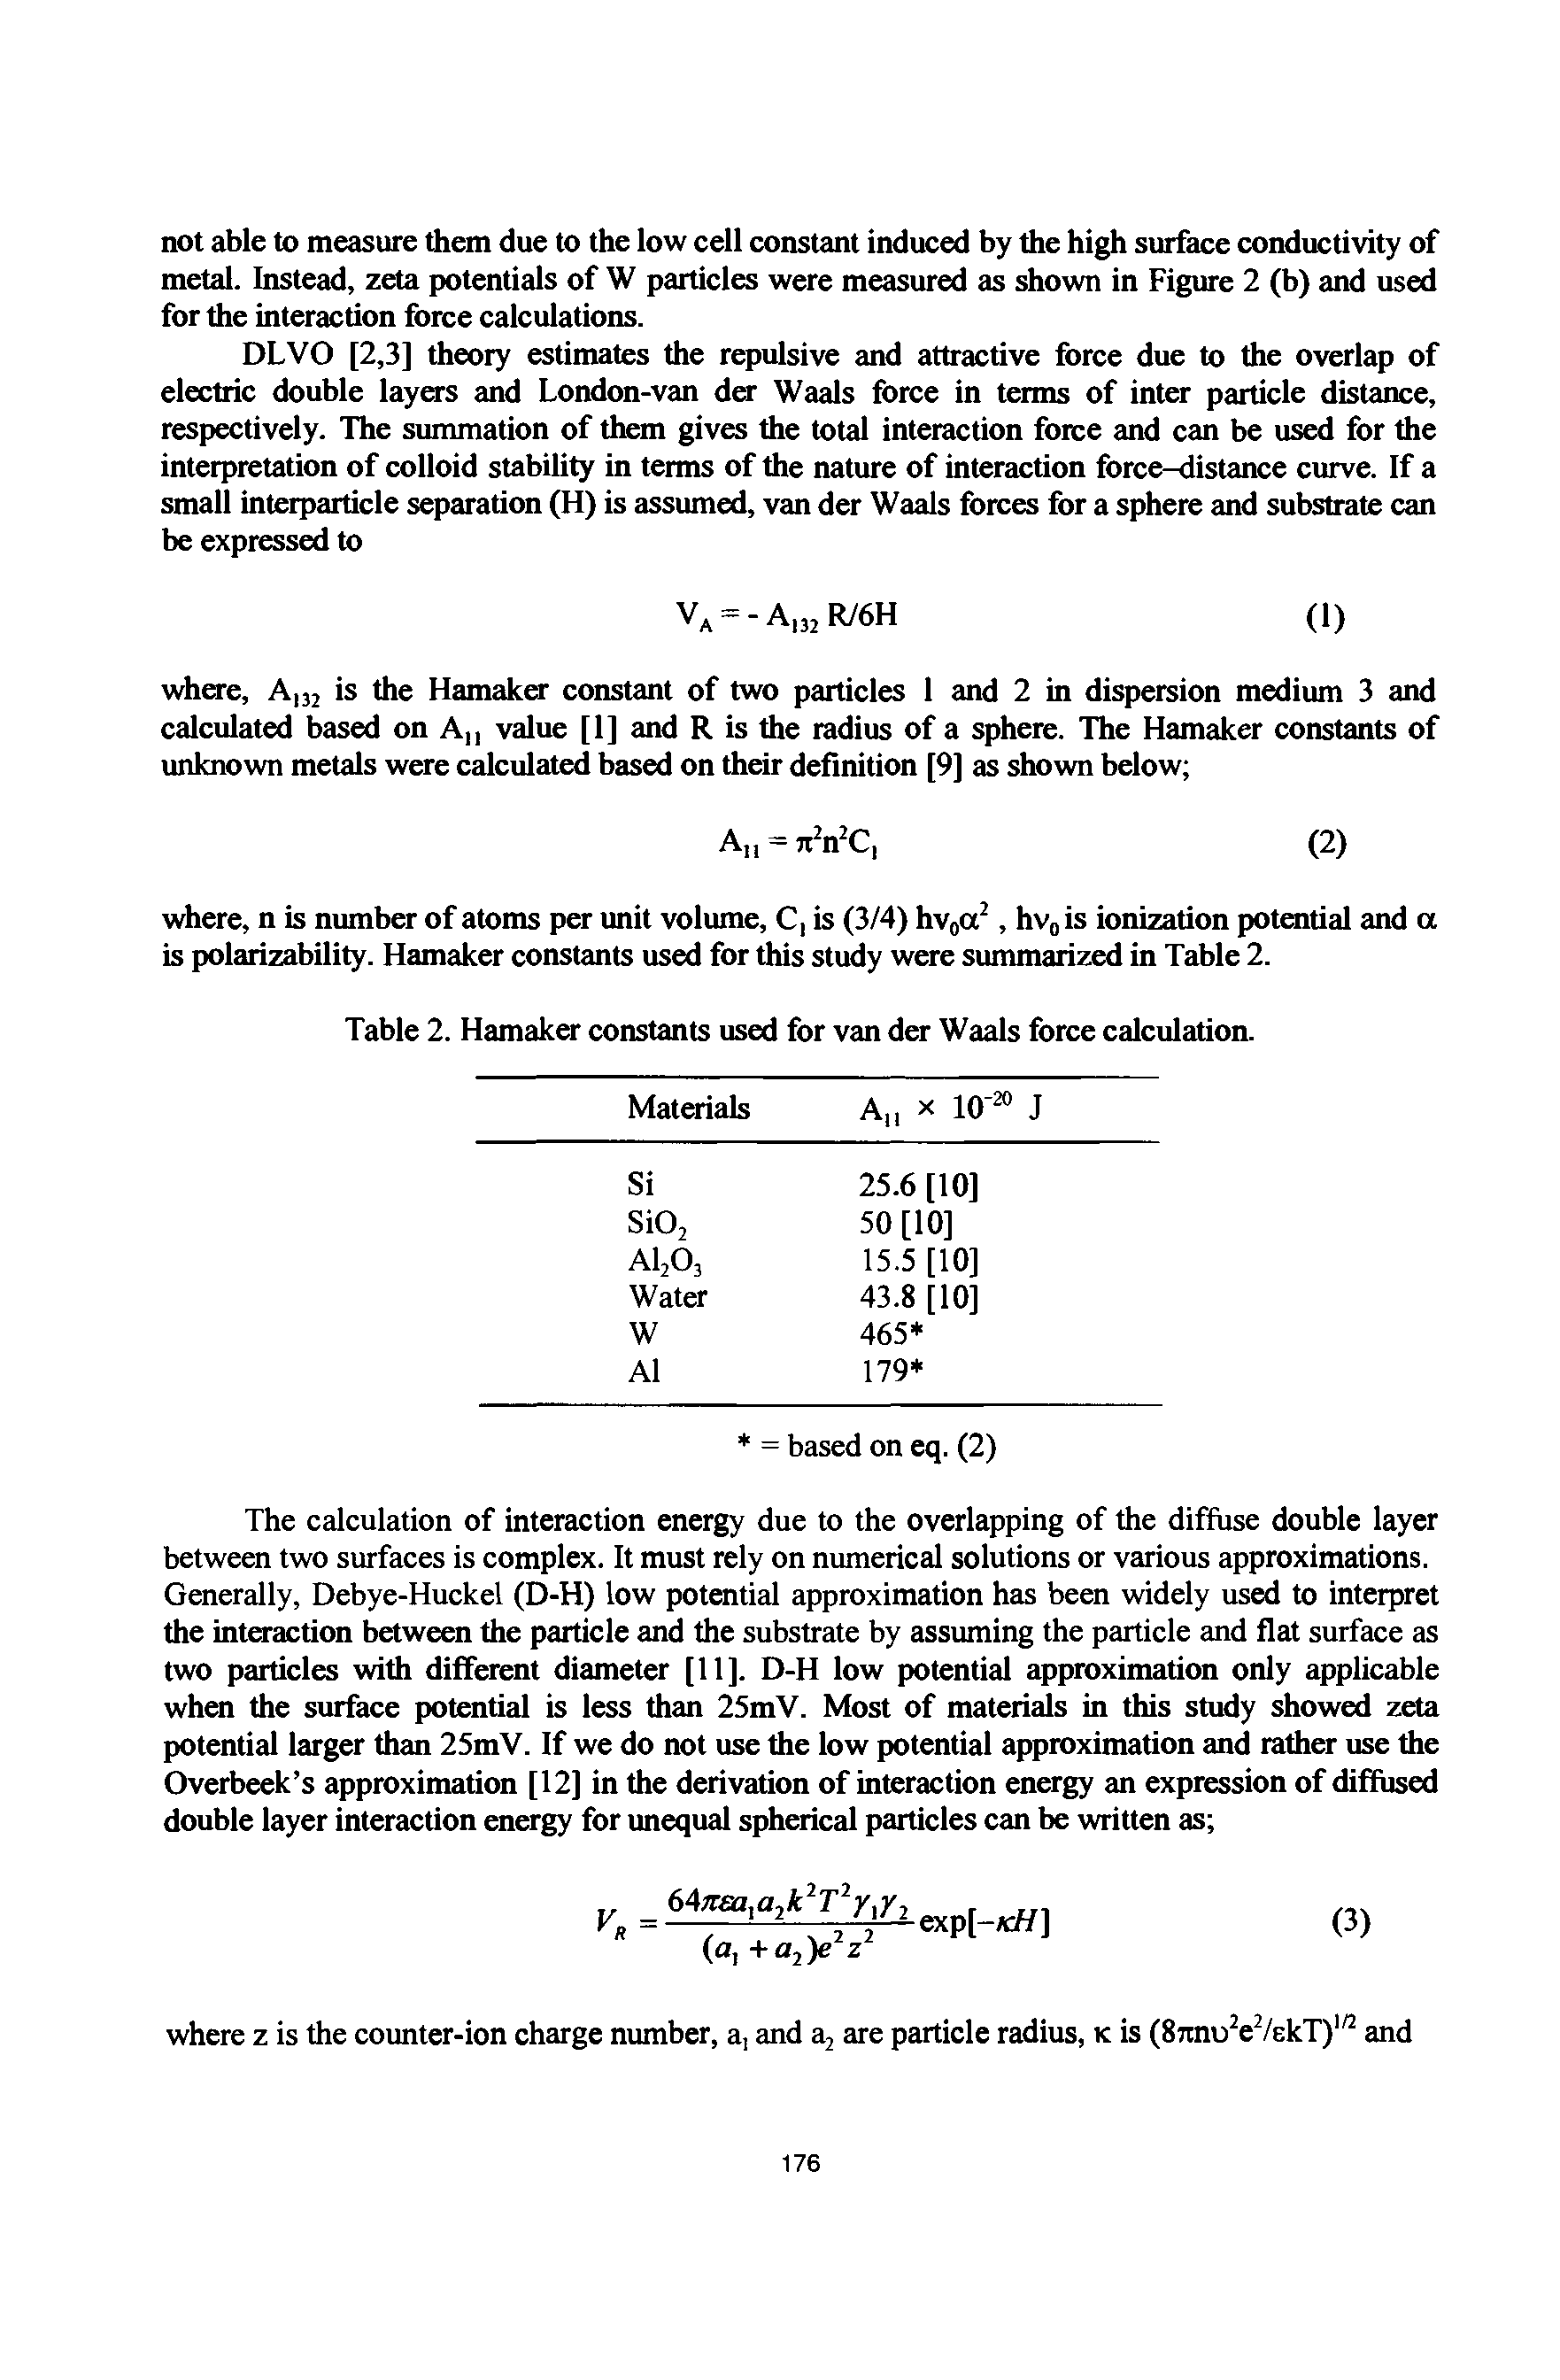 Table 2. Hamaker constants used for van der Waals force calculation.